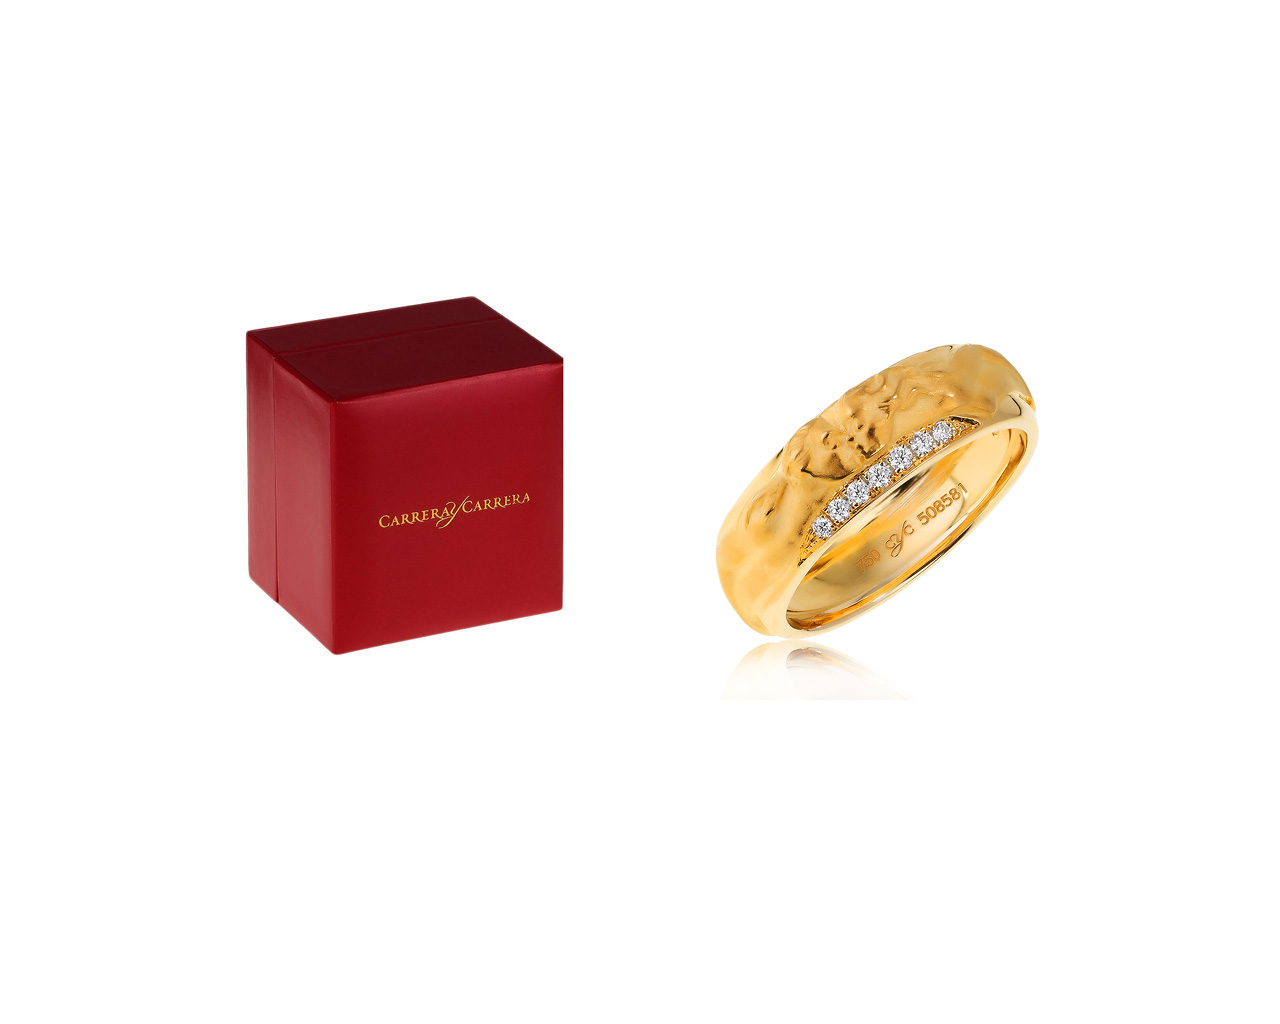 Оригинальное золотое кольцо с бриллиантами 0.08ct Carrera y Carrera Promesa